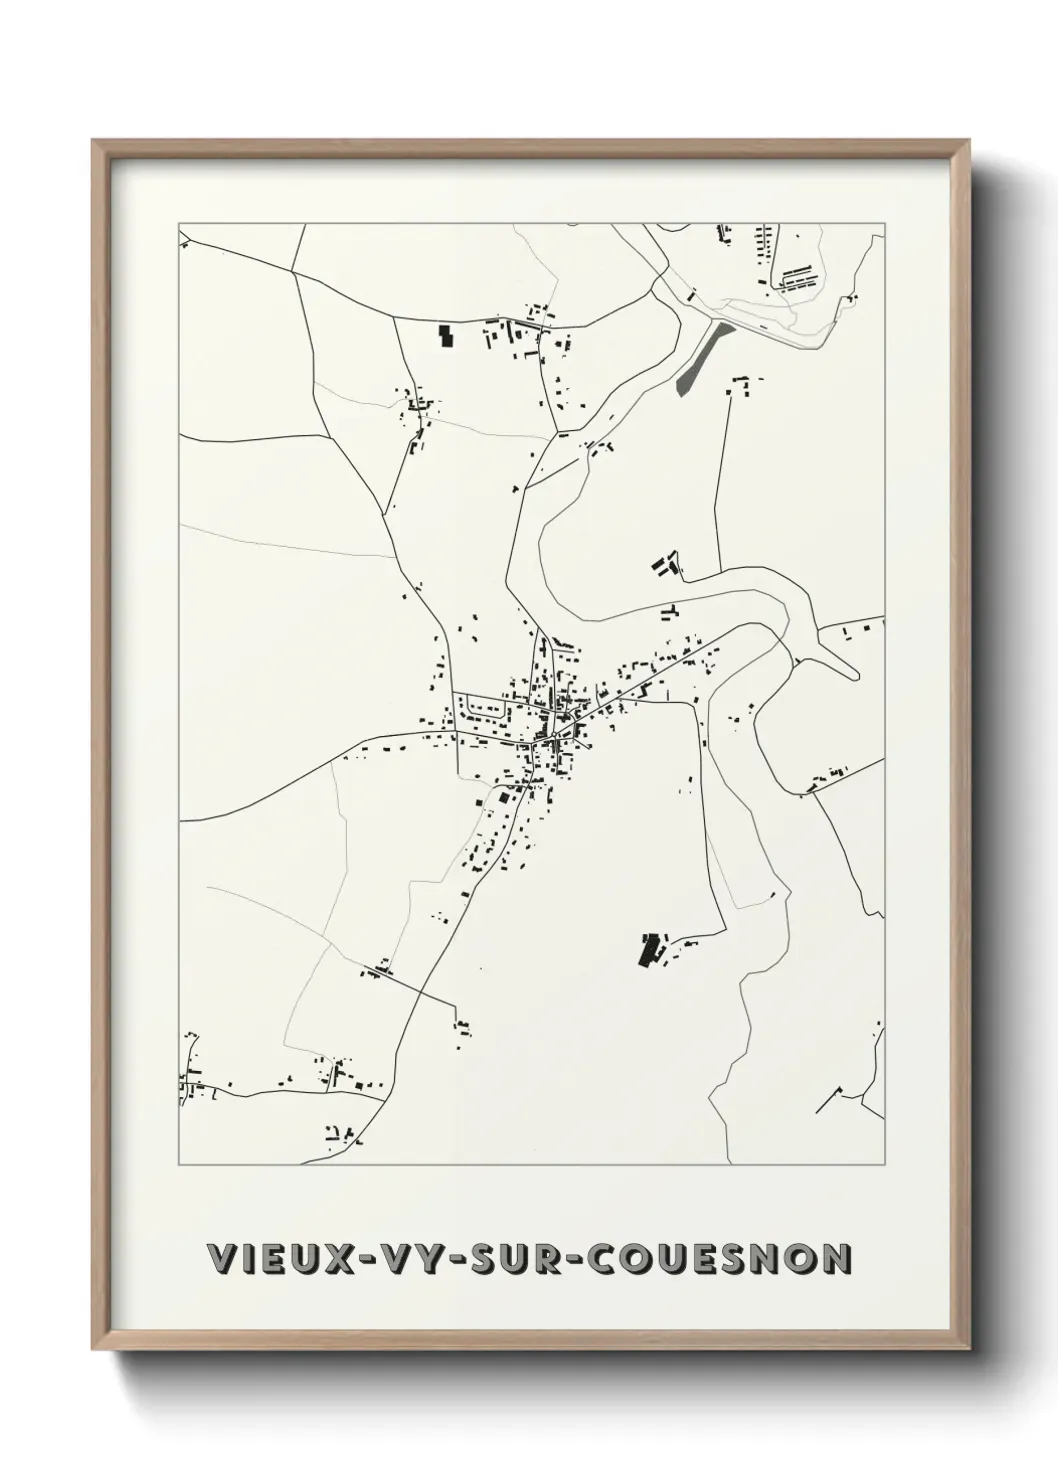 Un poster carteVieux-Vy-sur-Couesnon